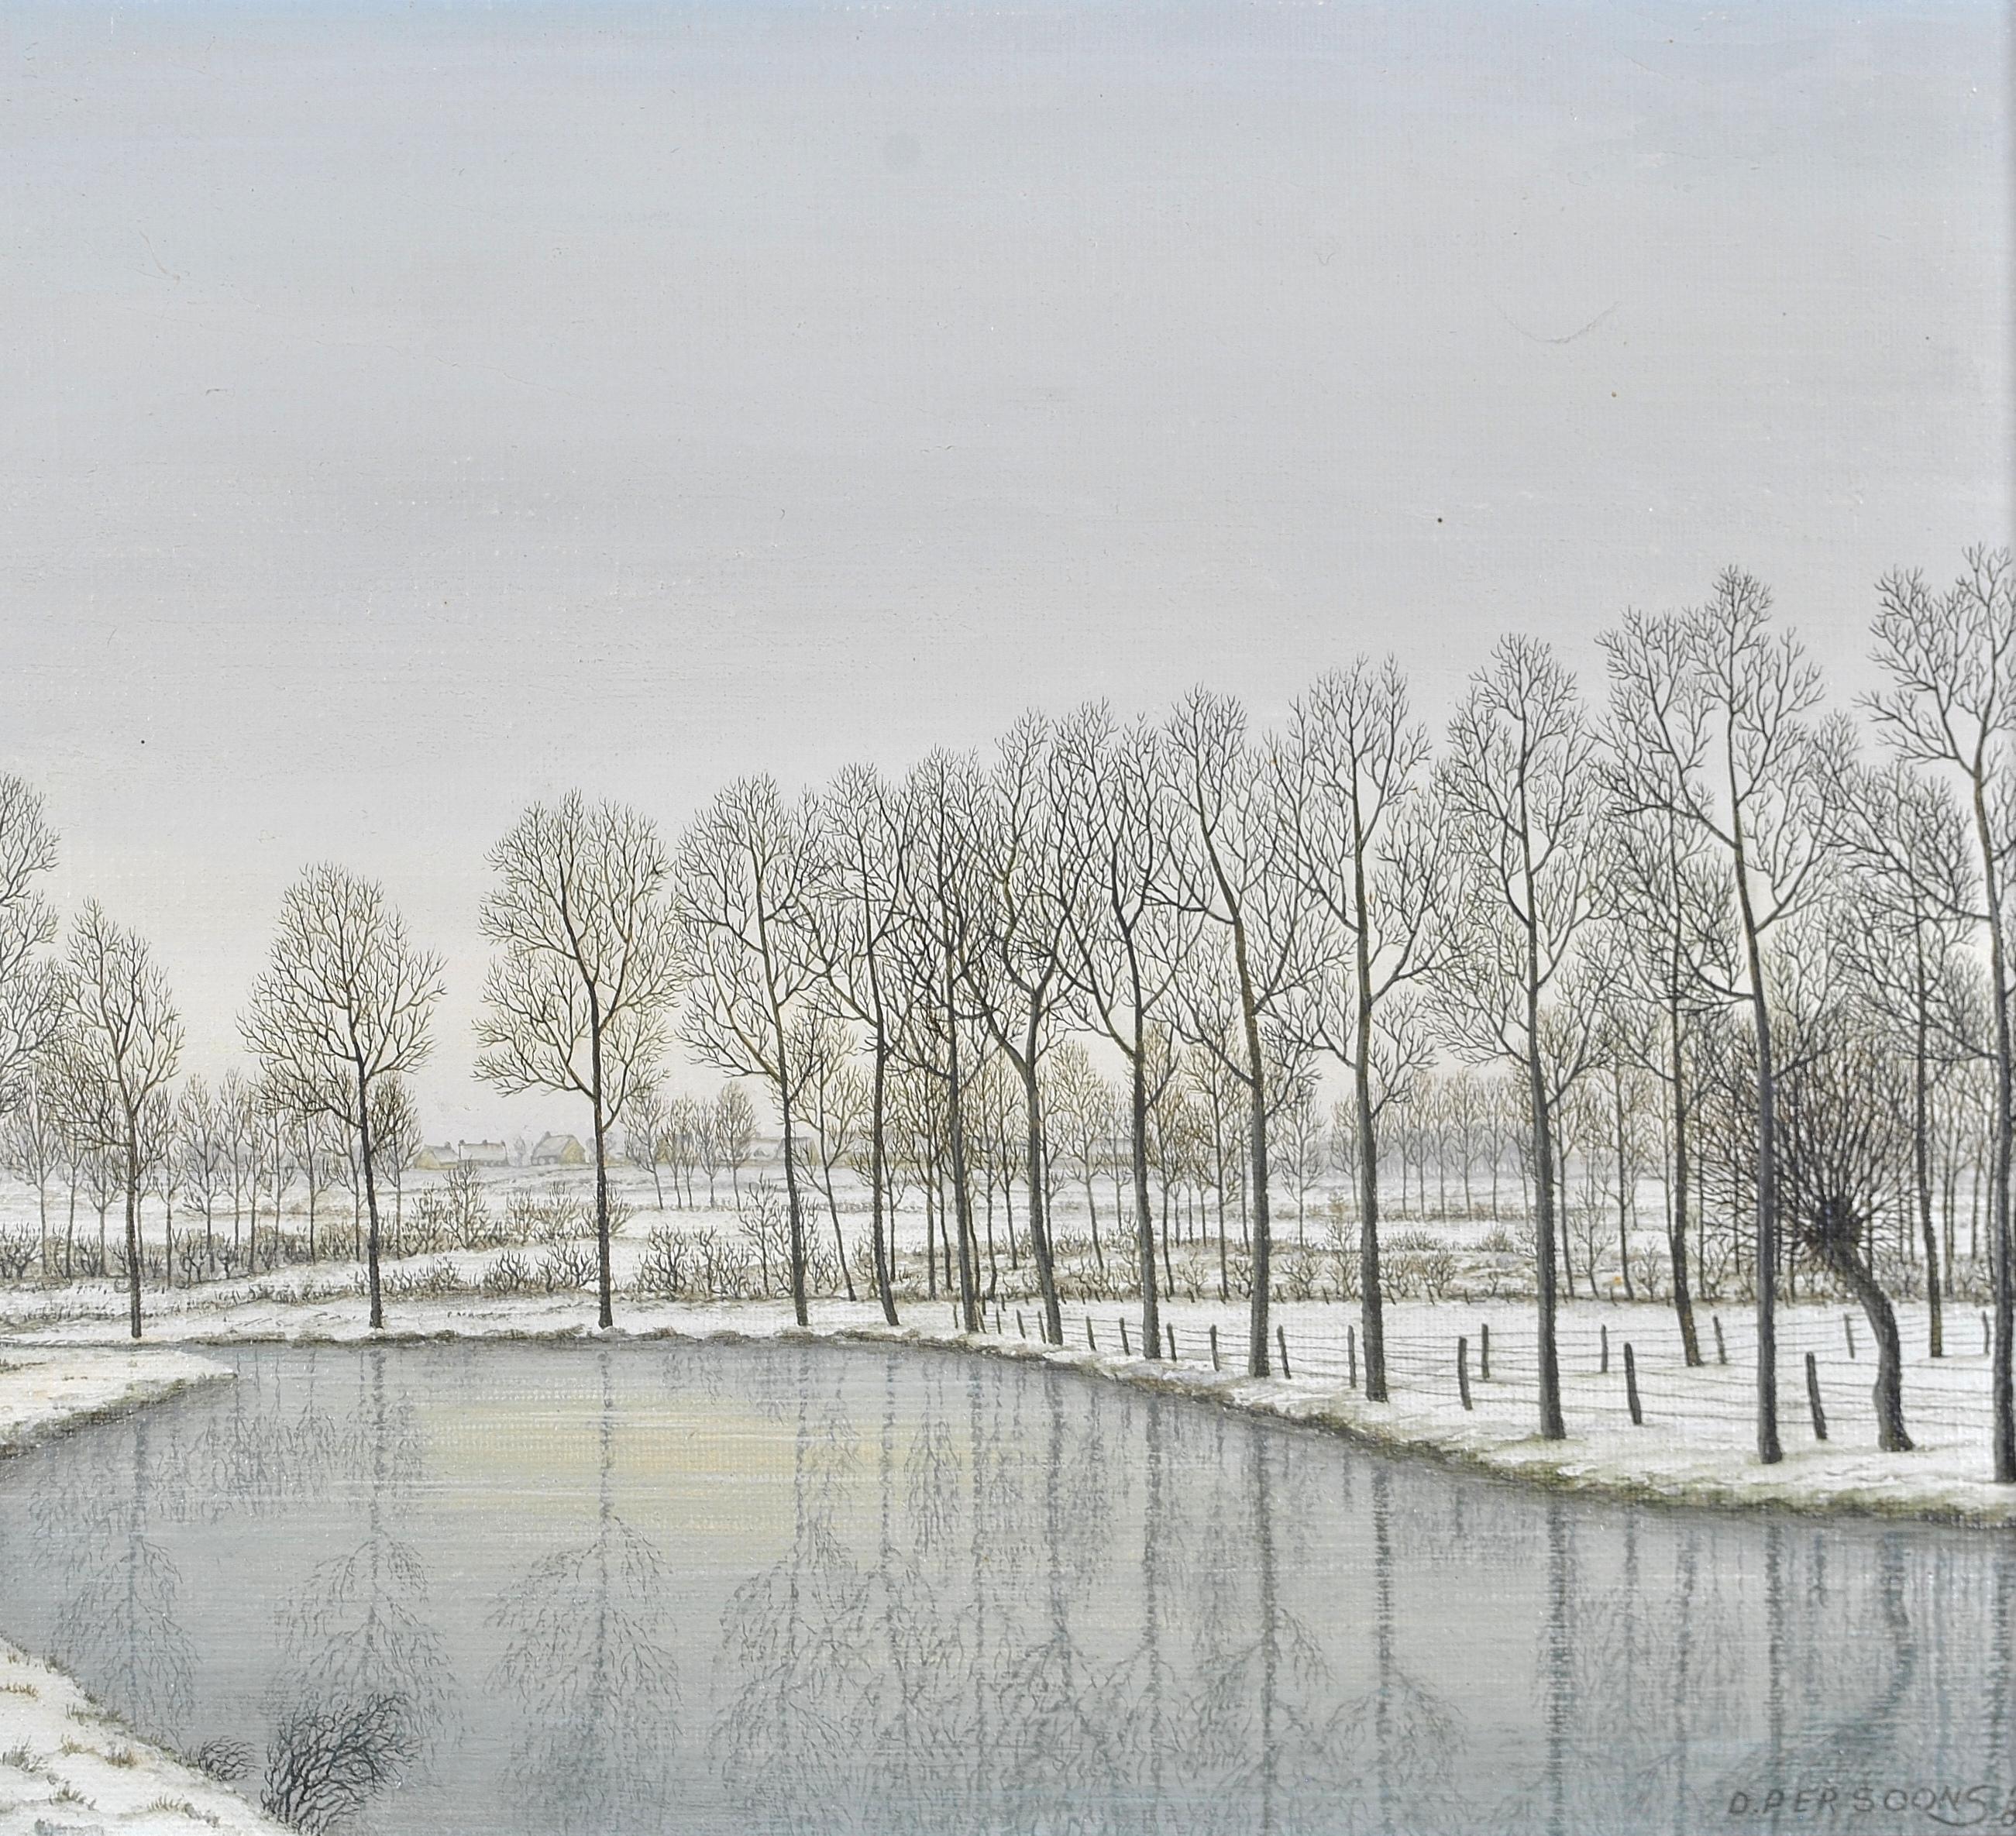 Une belle huile sur toile belge du 20e siècle représentant un paysage de rivière hivernale couverte de neige. 

Remarquable peinture de paysage dans le style Naif, signée D. Persoons '86 en bas à droite. Présenté dans un magnifique cadre à profil